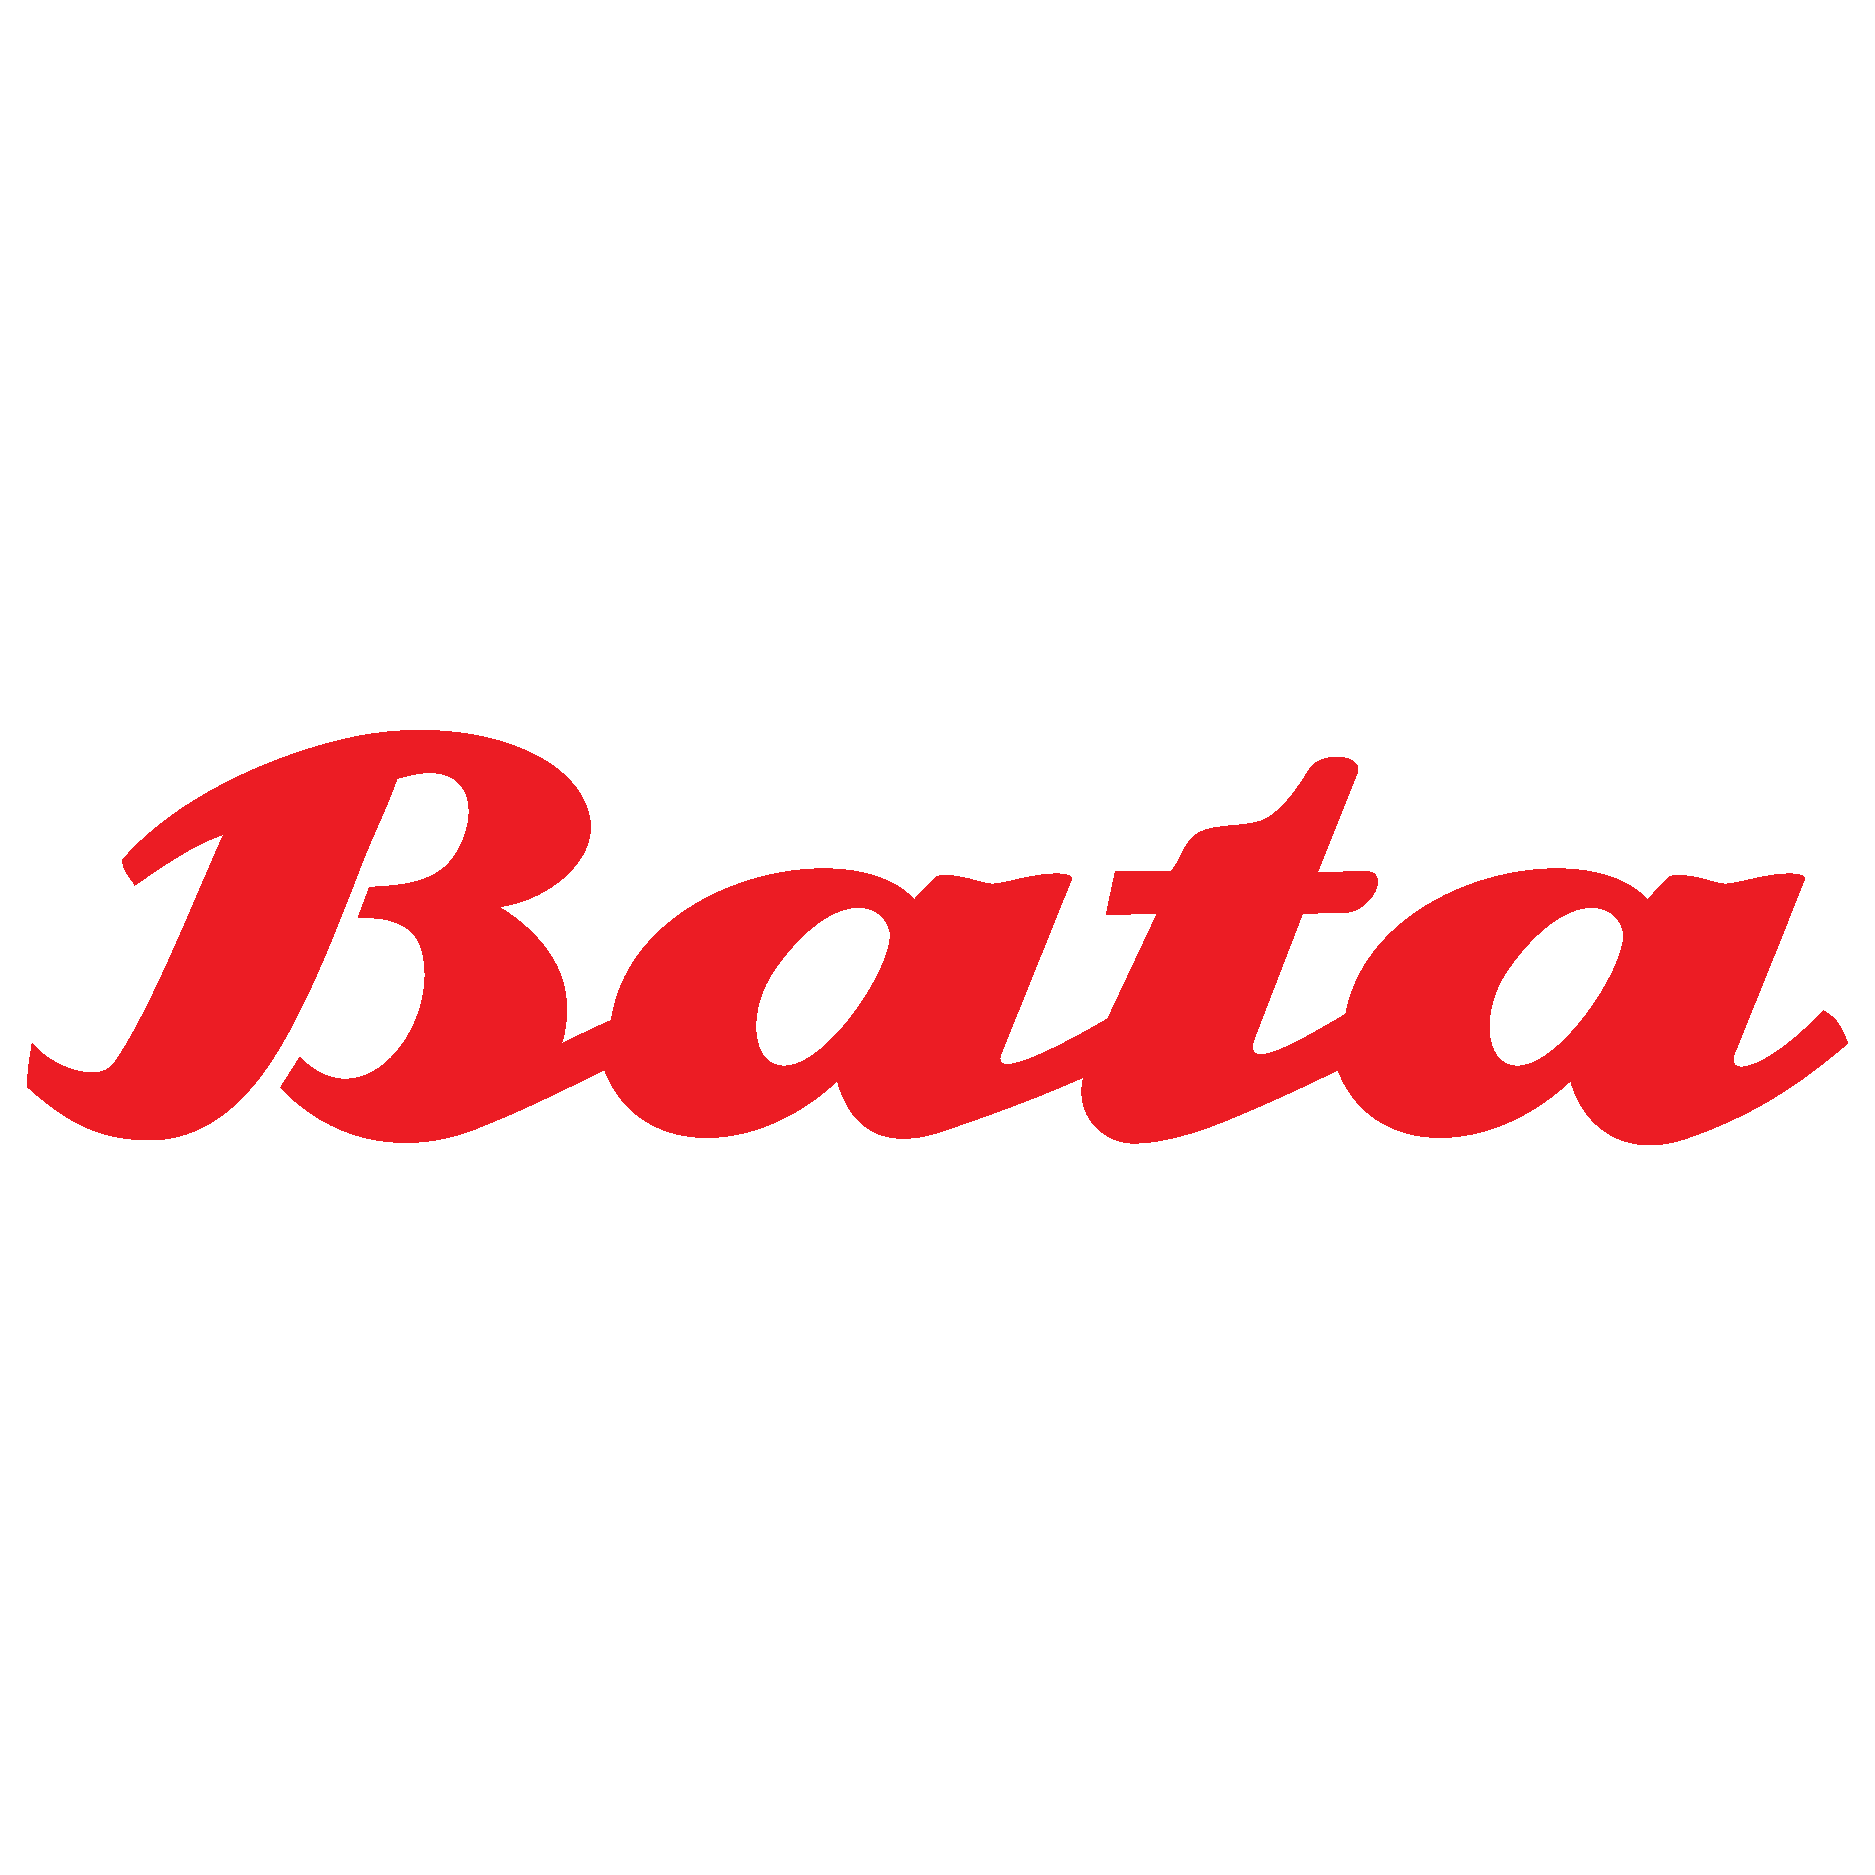 Footwear maker Bata India's Q3 profit slumps on sluggish demand | Reuters